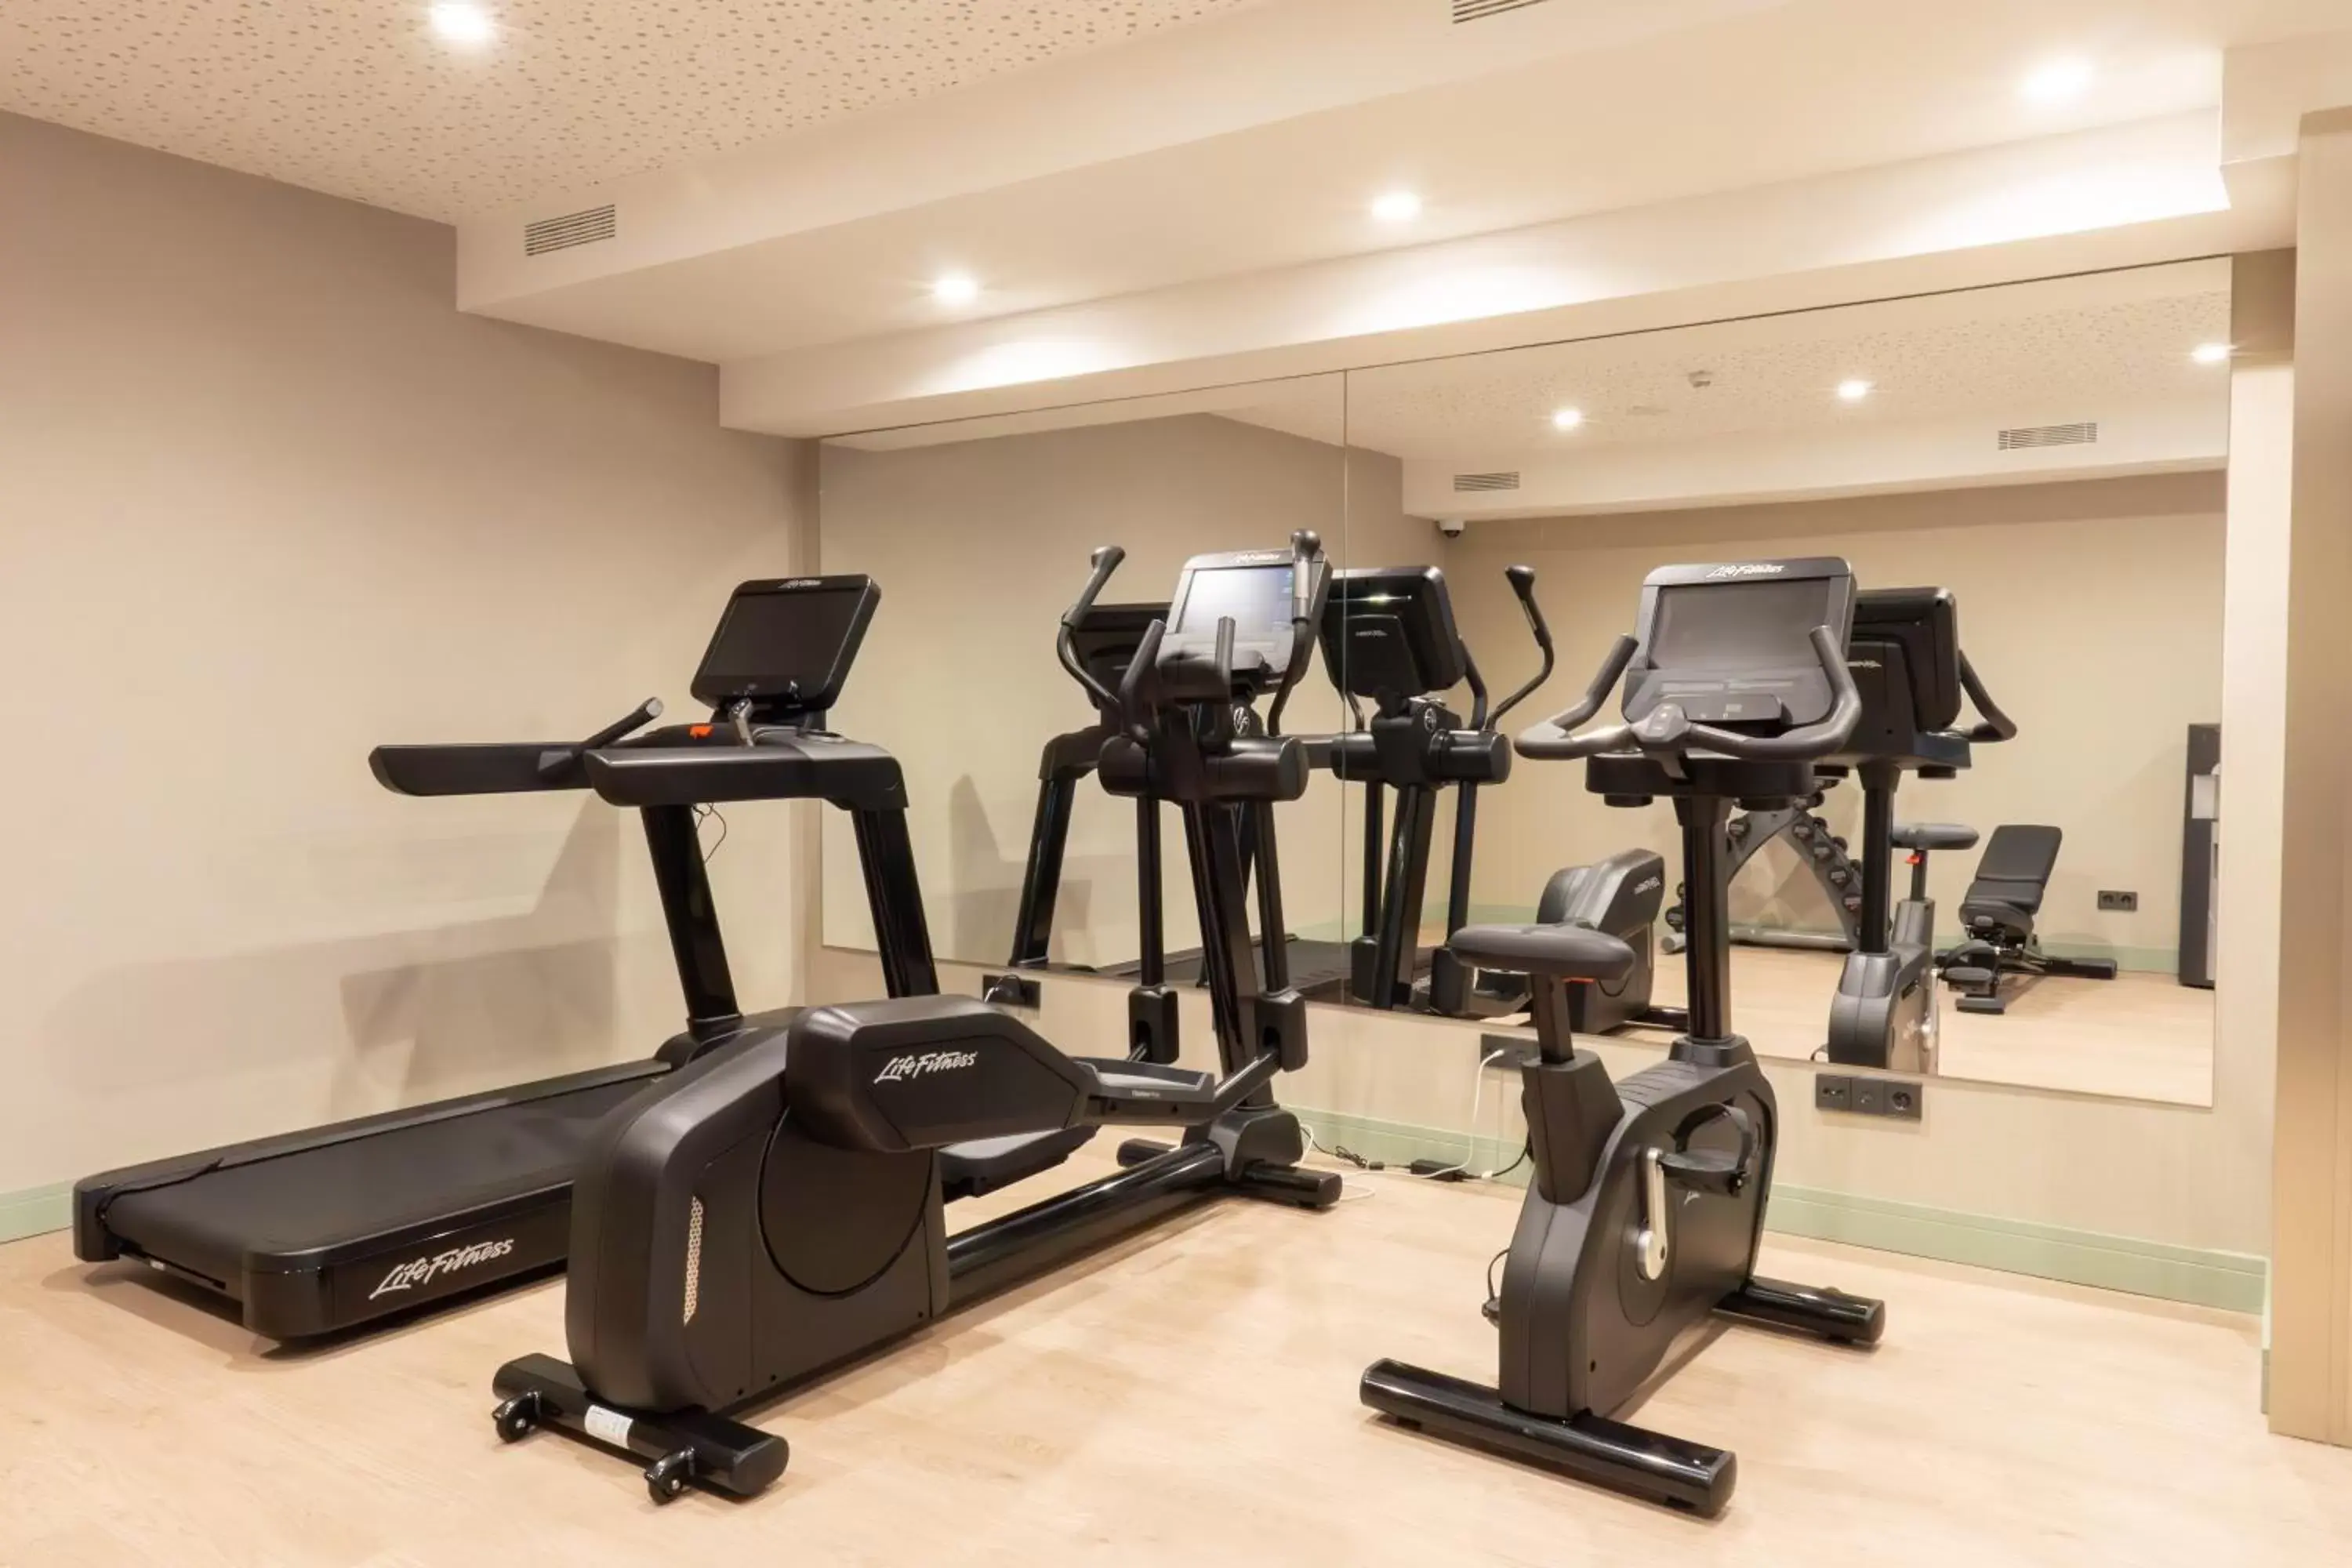 Fitness centre/facilities, Fitness Center/Facilities in Catalonia La Maquinista